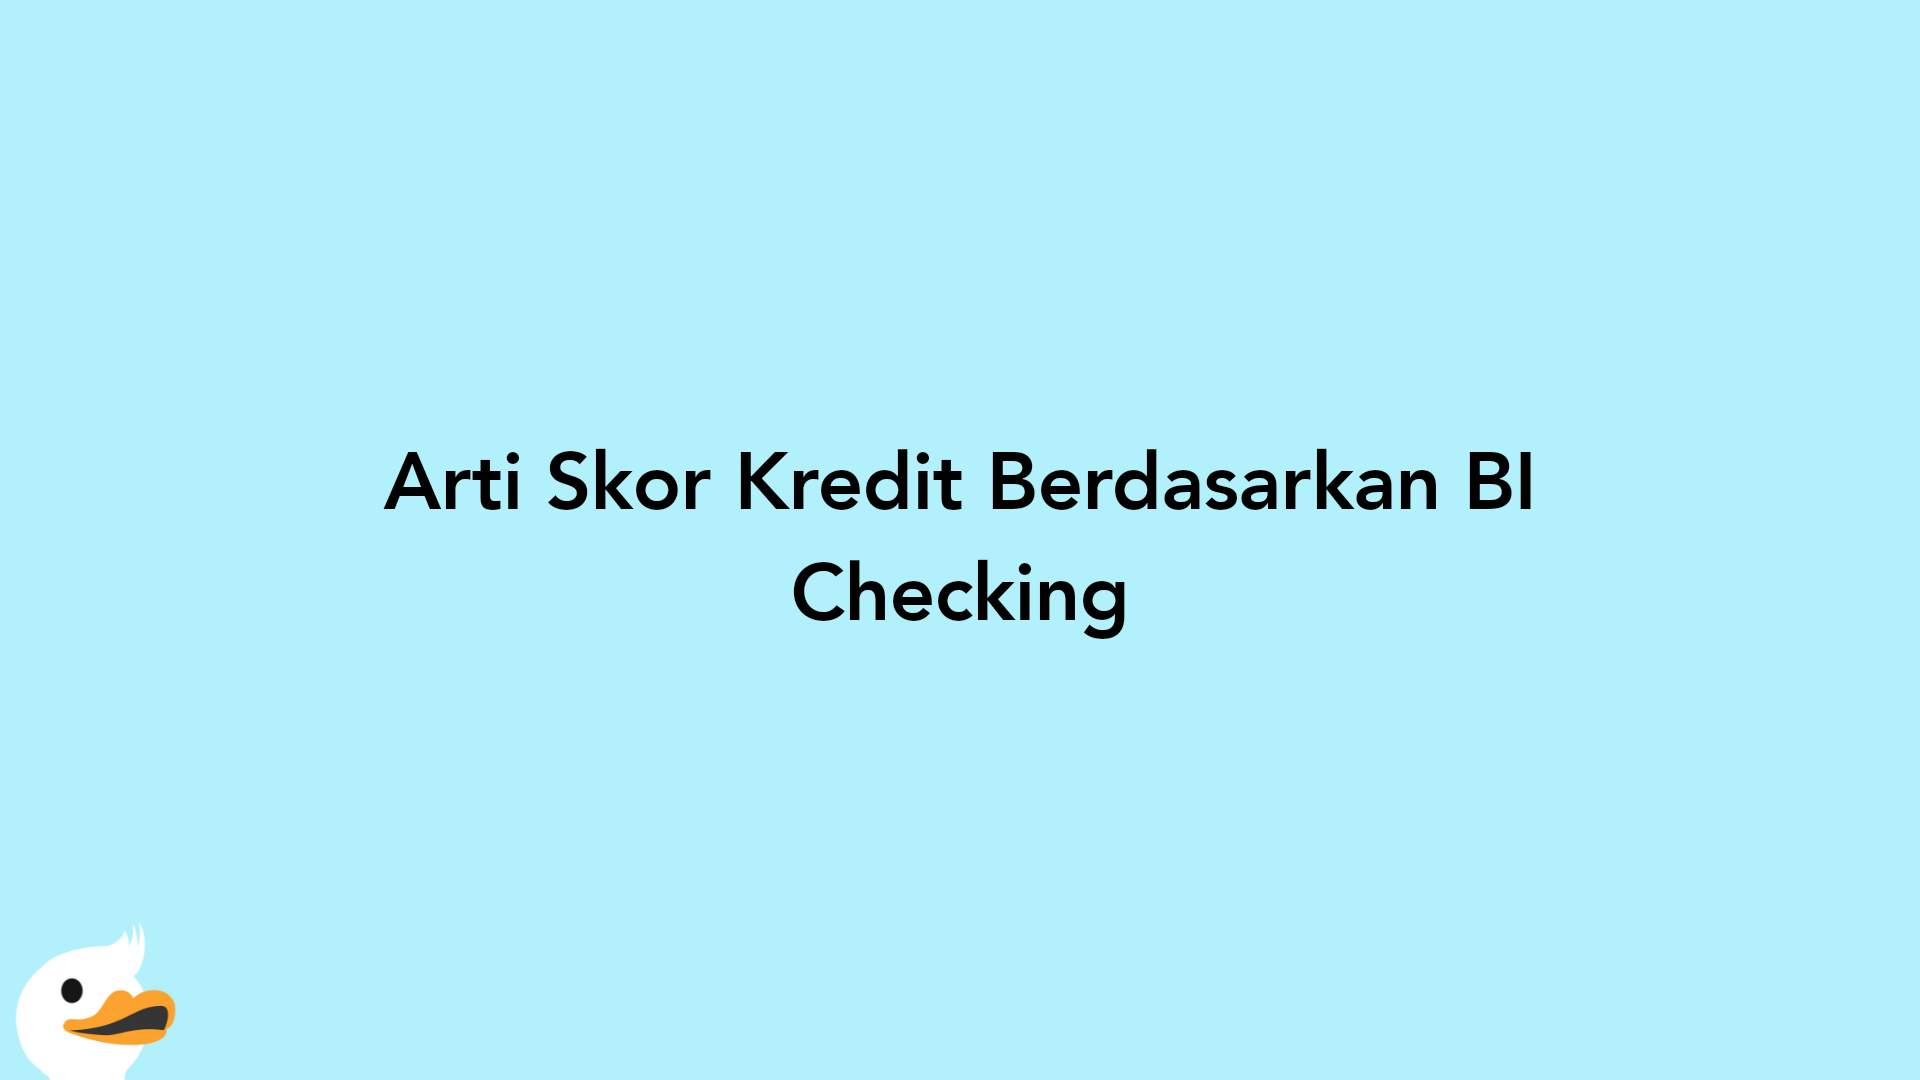 Arti Skor Kredit Berdasarkan BI Checking